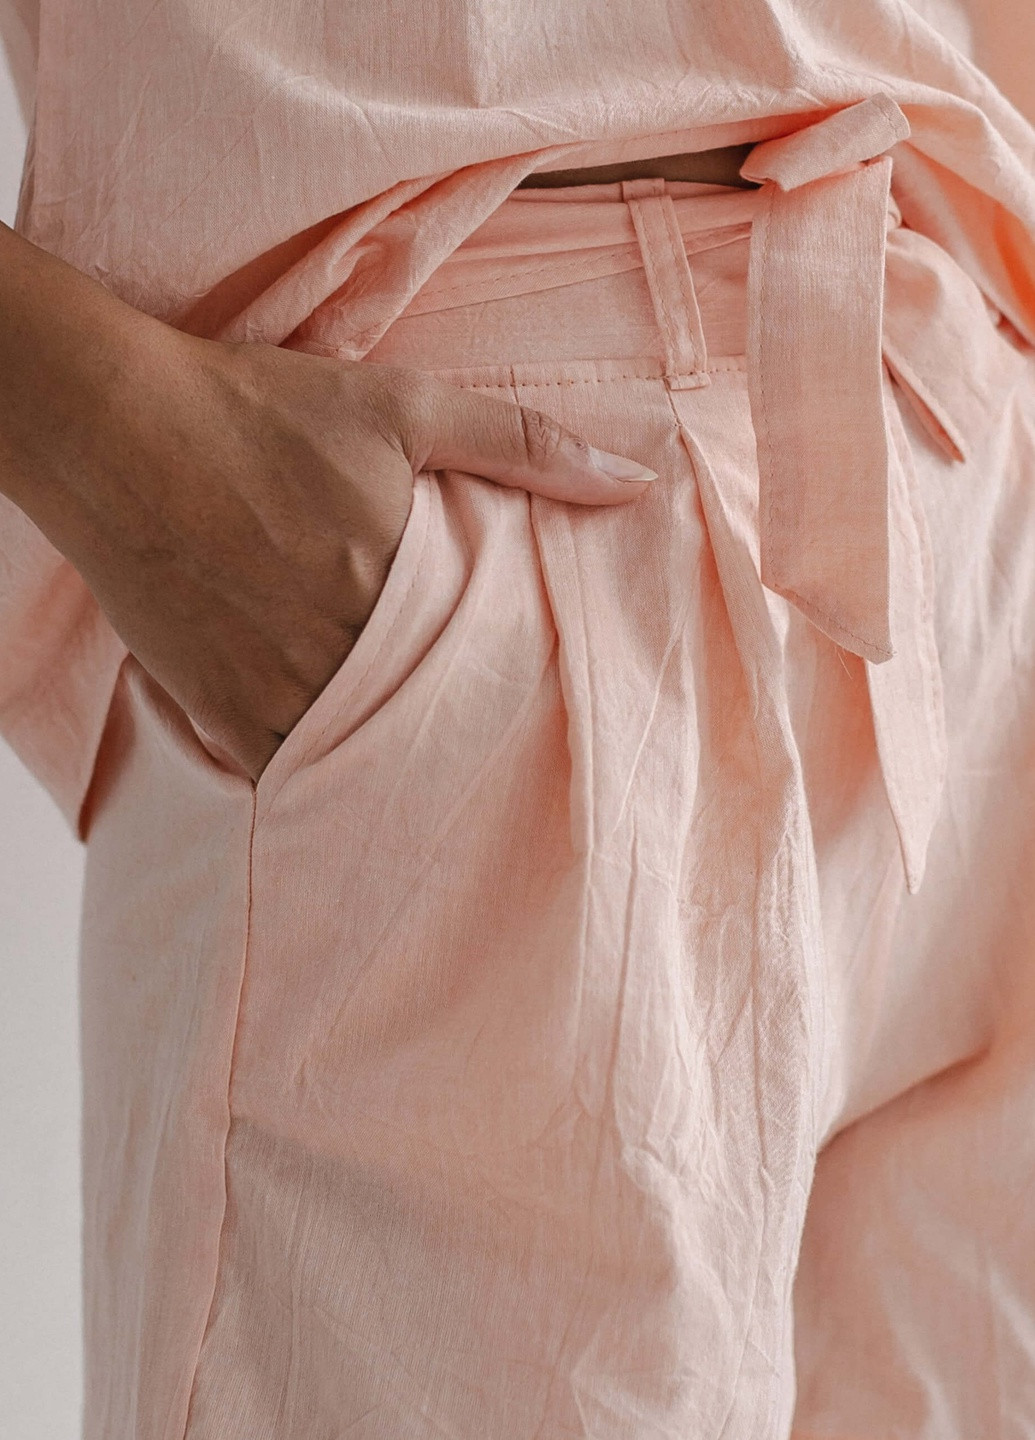 Персикова всесезон піжама жіноча з шортами apricot (l) футболка + шорти Leglo